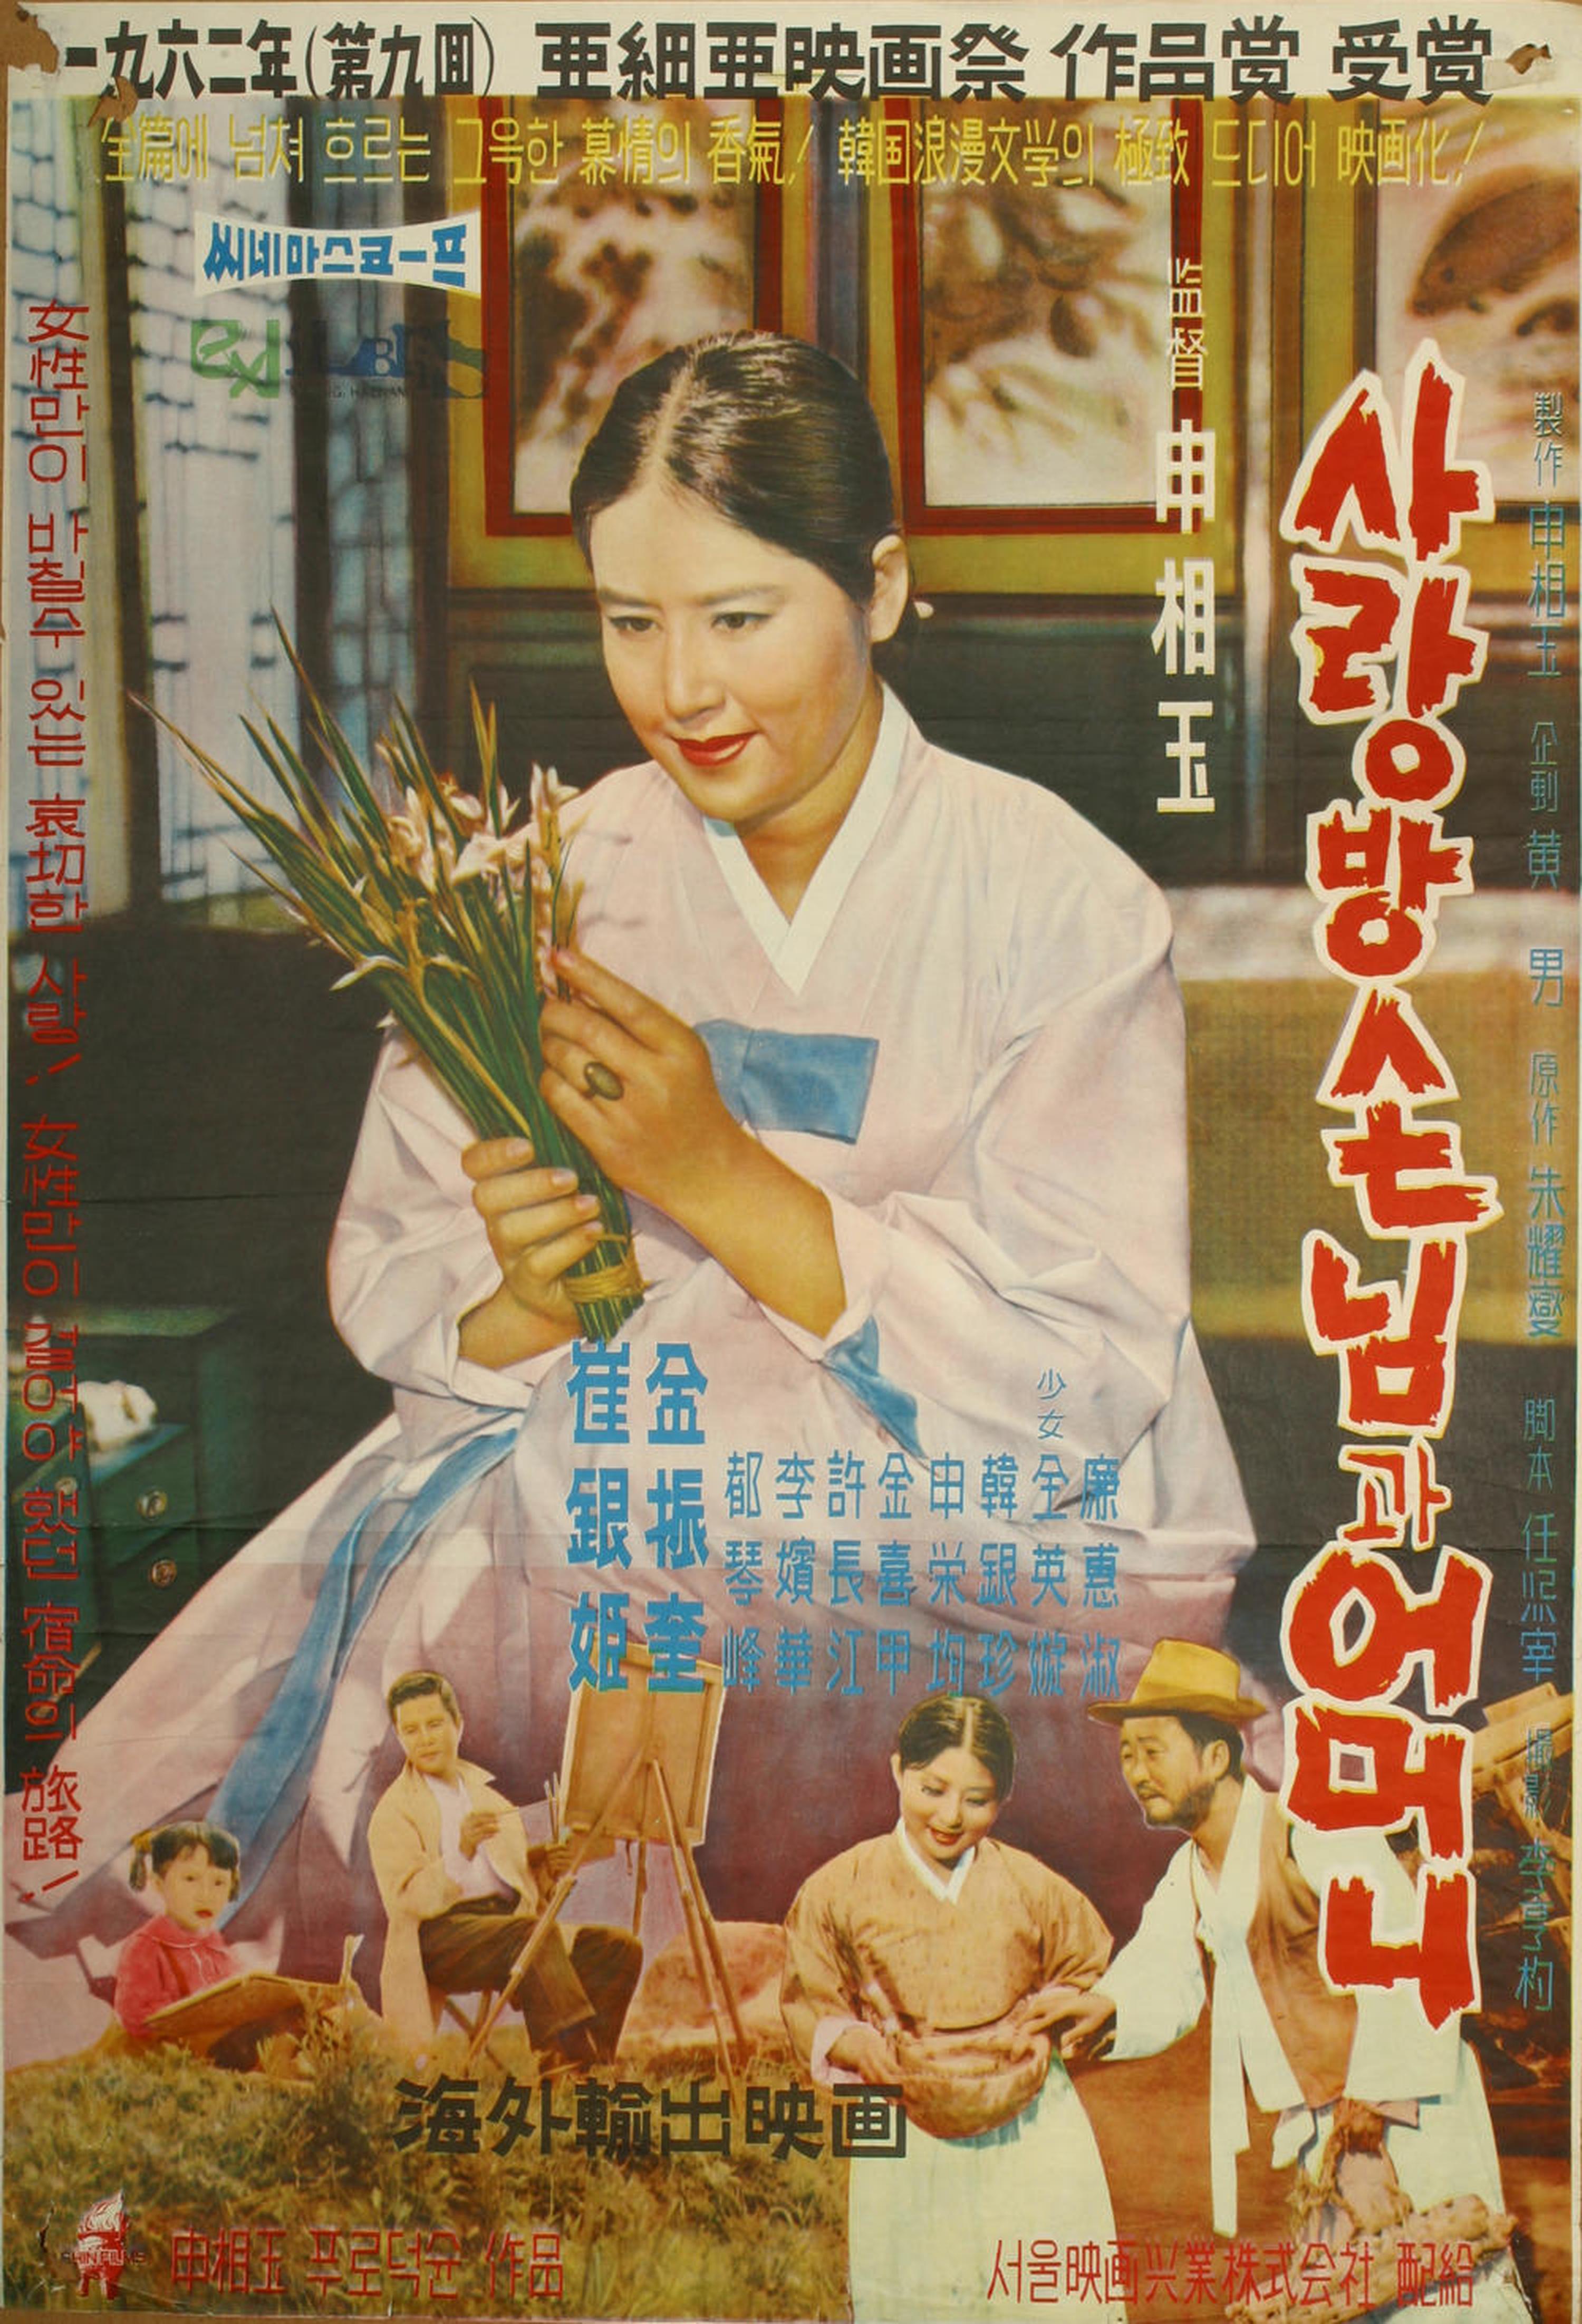 【1960-1970】《房客与妈妈》(1961)导演申相玉。影片清新的格调、矛盾的情感在当时受到极大欢迎。这样的故事即使放在任何时代都不过时。这部电影至今都还在韩国历代最优秀作品中排名前列。外国专业人员搜集韩国电影资料时，都不会漏掉这部电影。